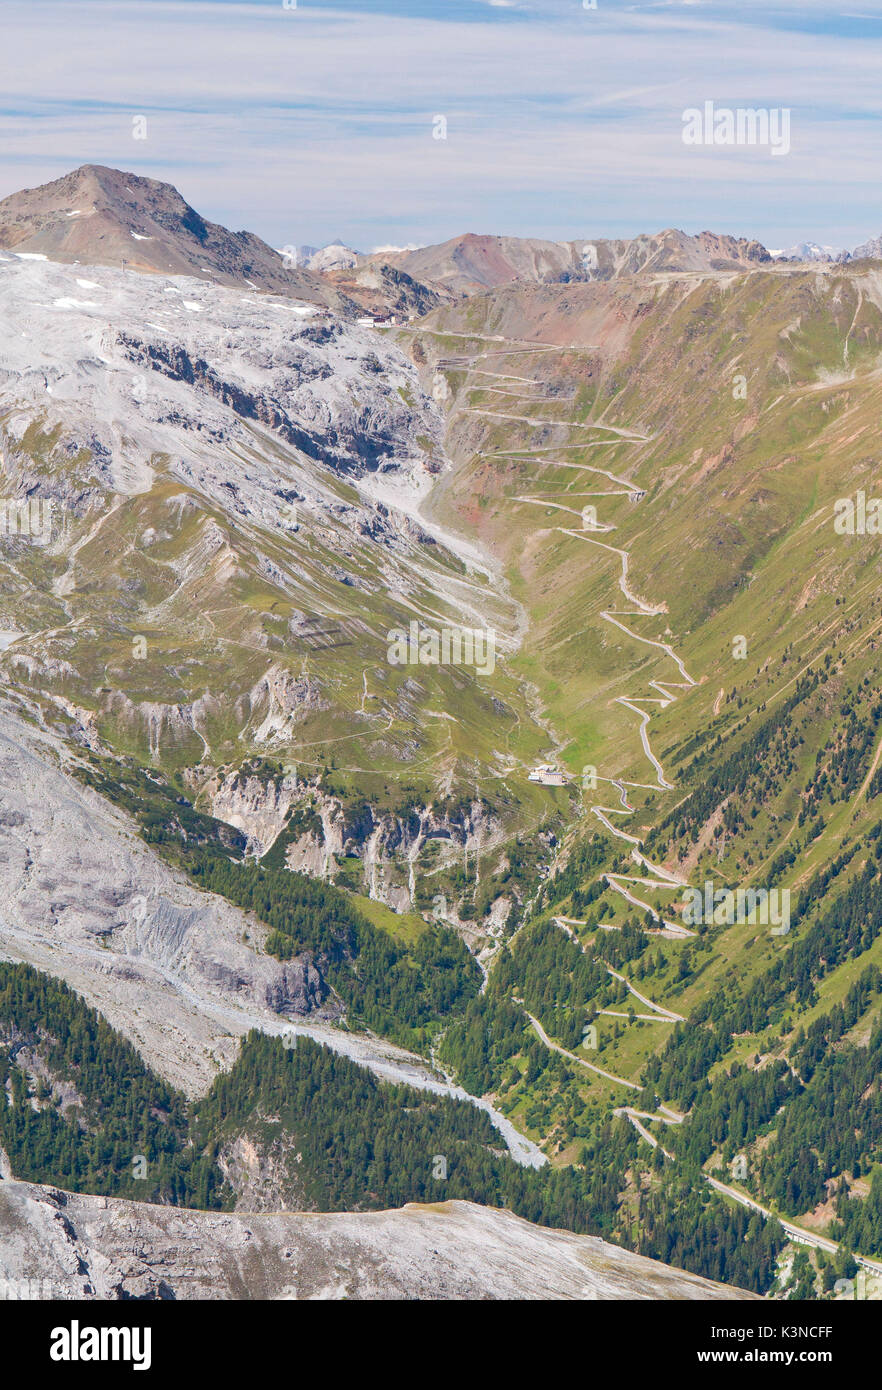 Europa, Italien, Bozen, Südtirol. Der Stelvio Mountain Road Südtirol Seite von Payer Hütte gesehen. Stockfoto